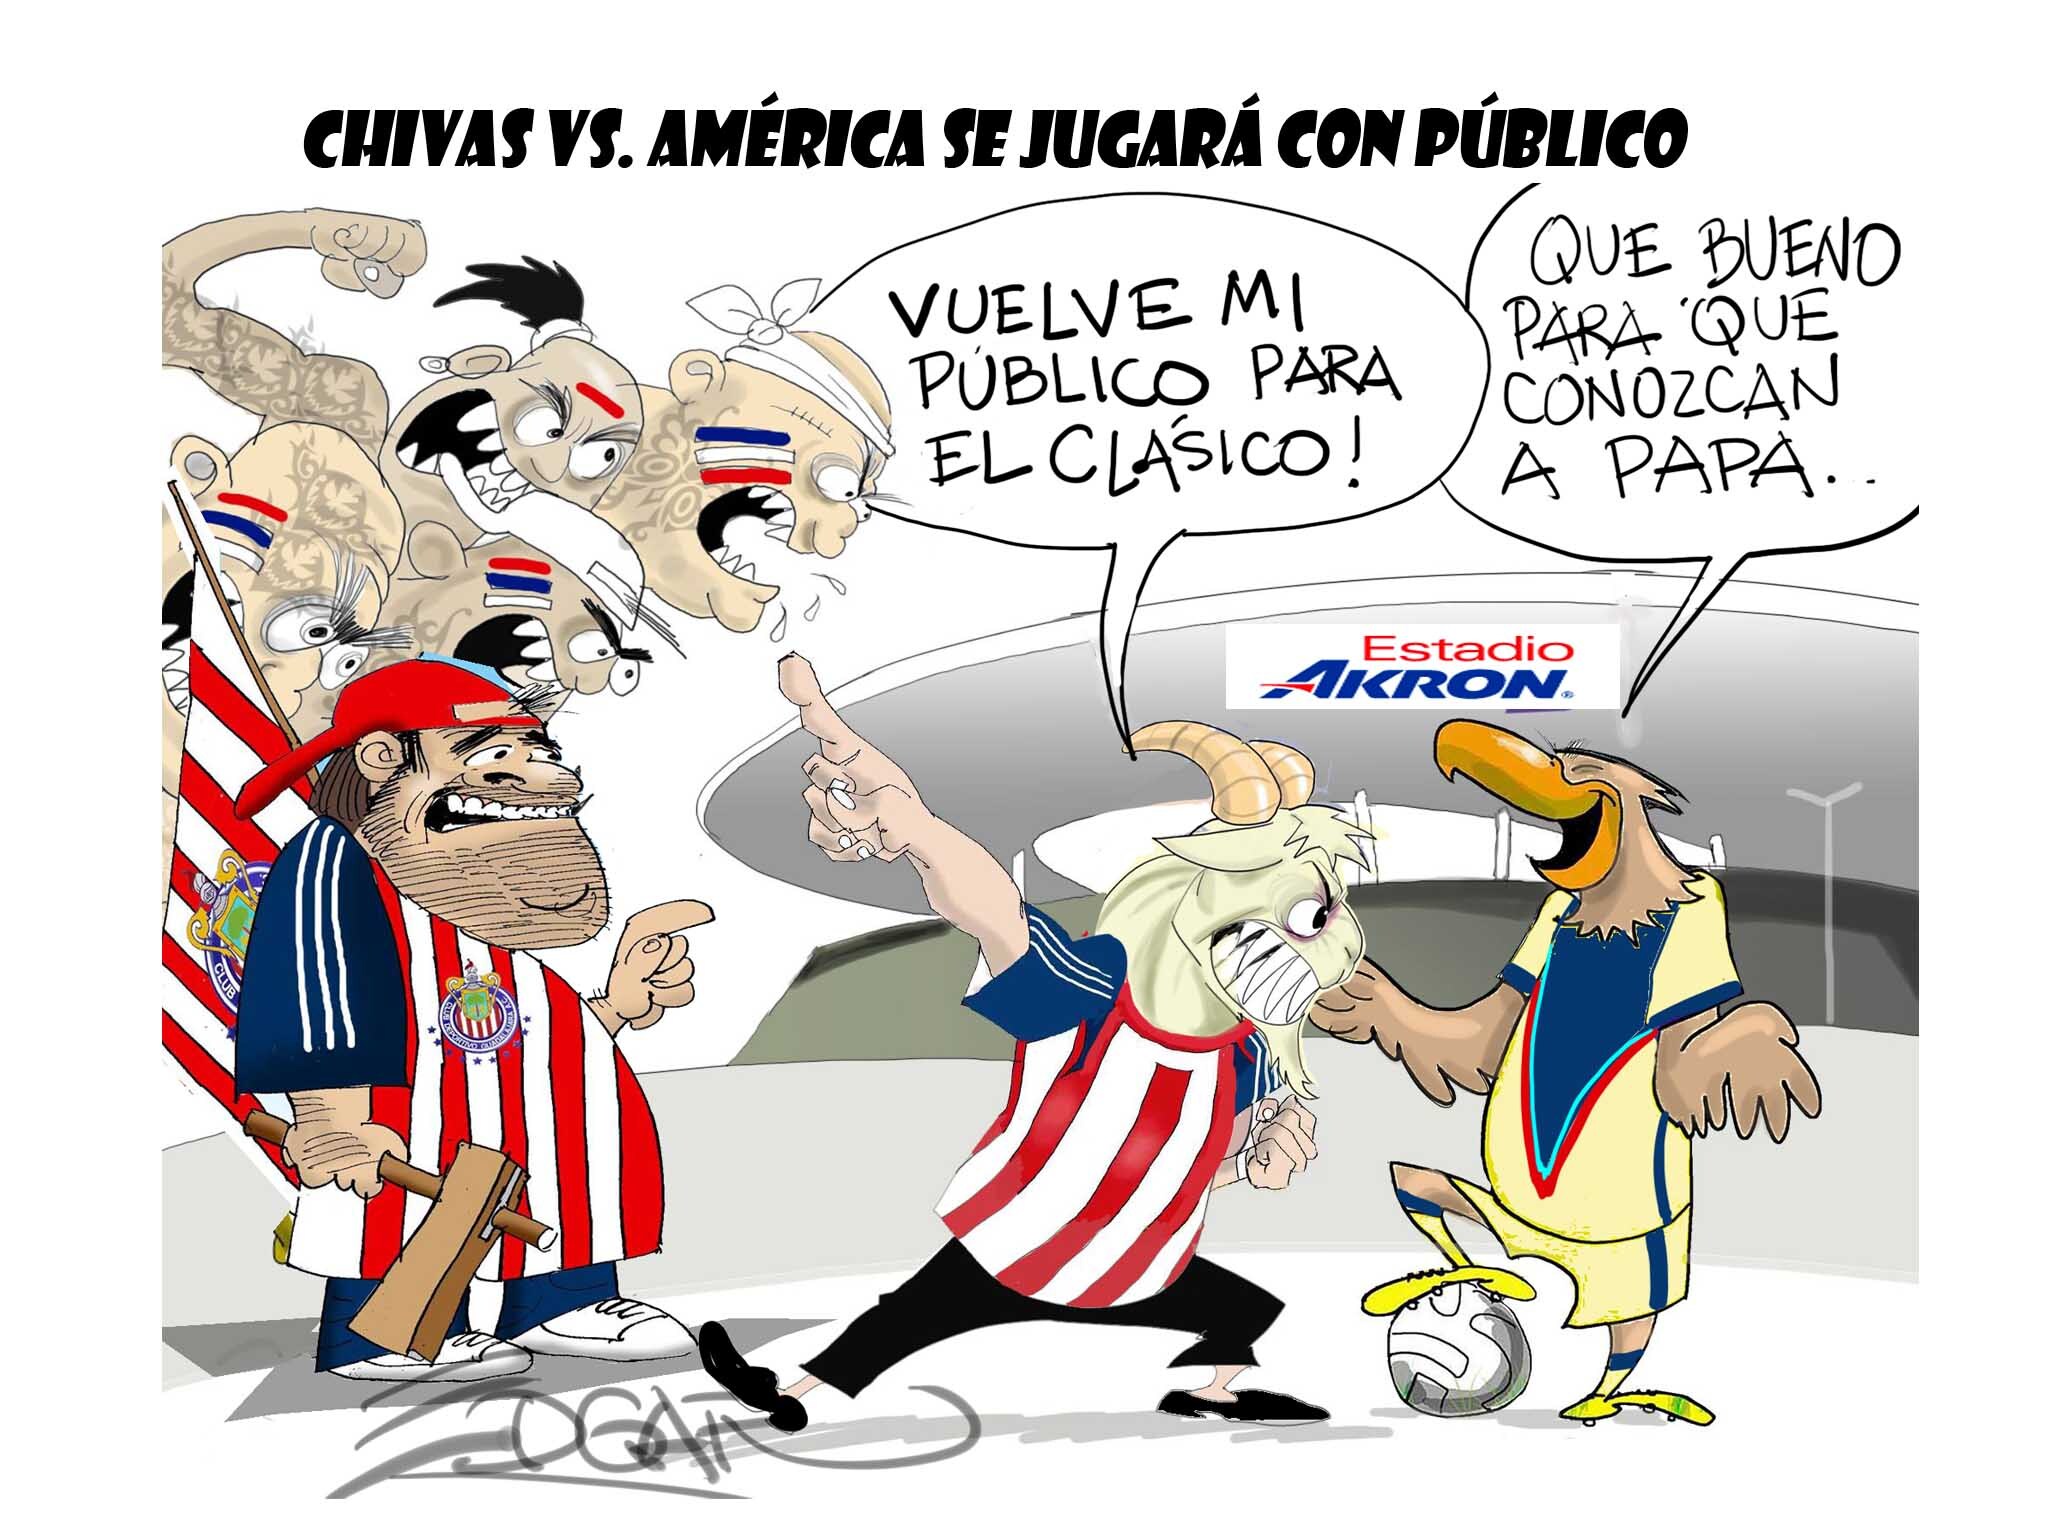 Club América vs. Chivas se jugará con público: El Cartón de Édgar